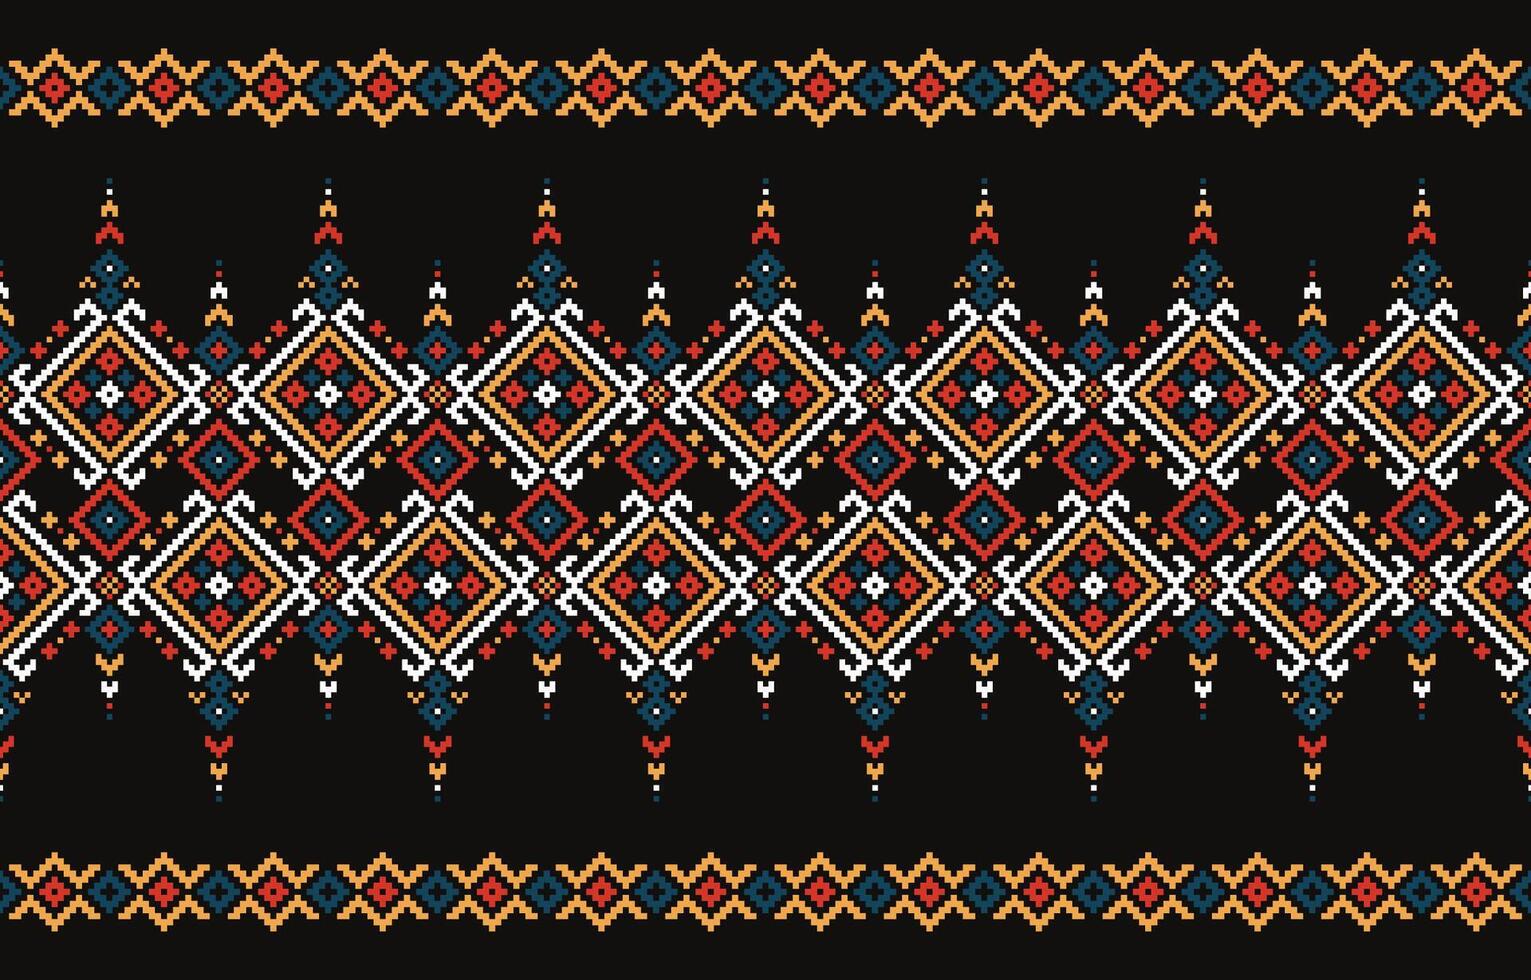 deze kruis steek patroon herschept een kleurrijk, korrelig etnisch motief met vierkanten, driehoeken en diamanten.ontwerp voor stof,patroon,motief,handdoek,aida,folk,retro,abstract,batik,zigzag,textiel kunst. vector